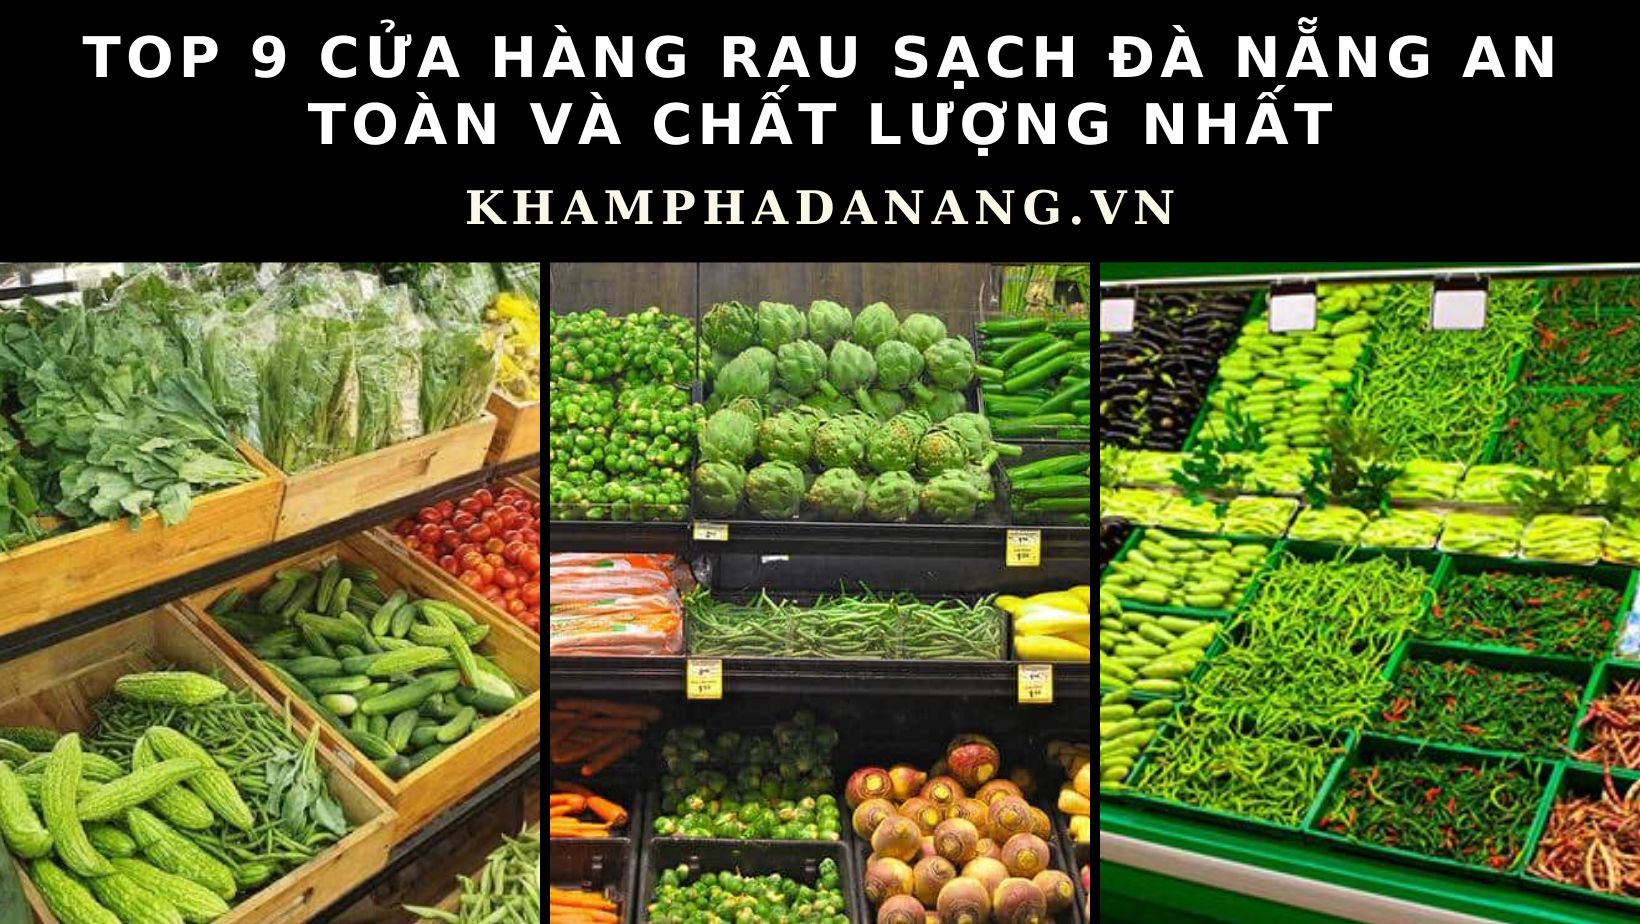 Bật mí 9 cửa hàng rau sạch Đà Nẵng an toàn và chất lượng nhất